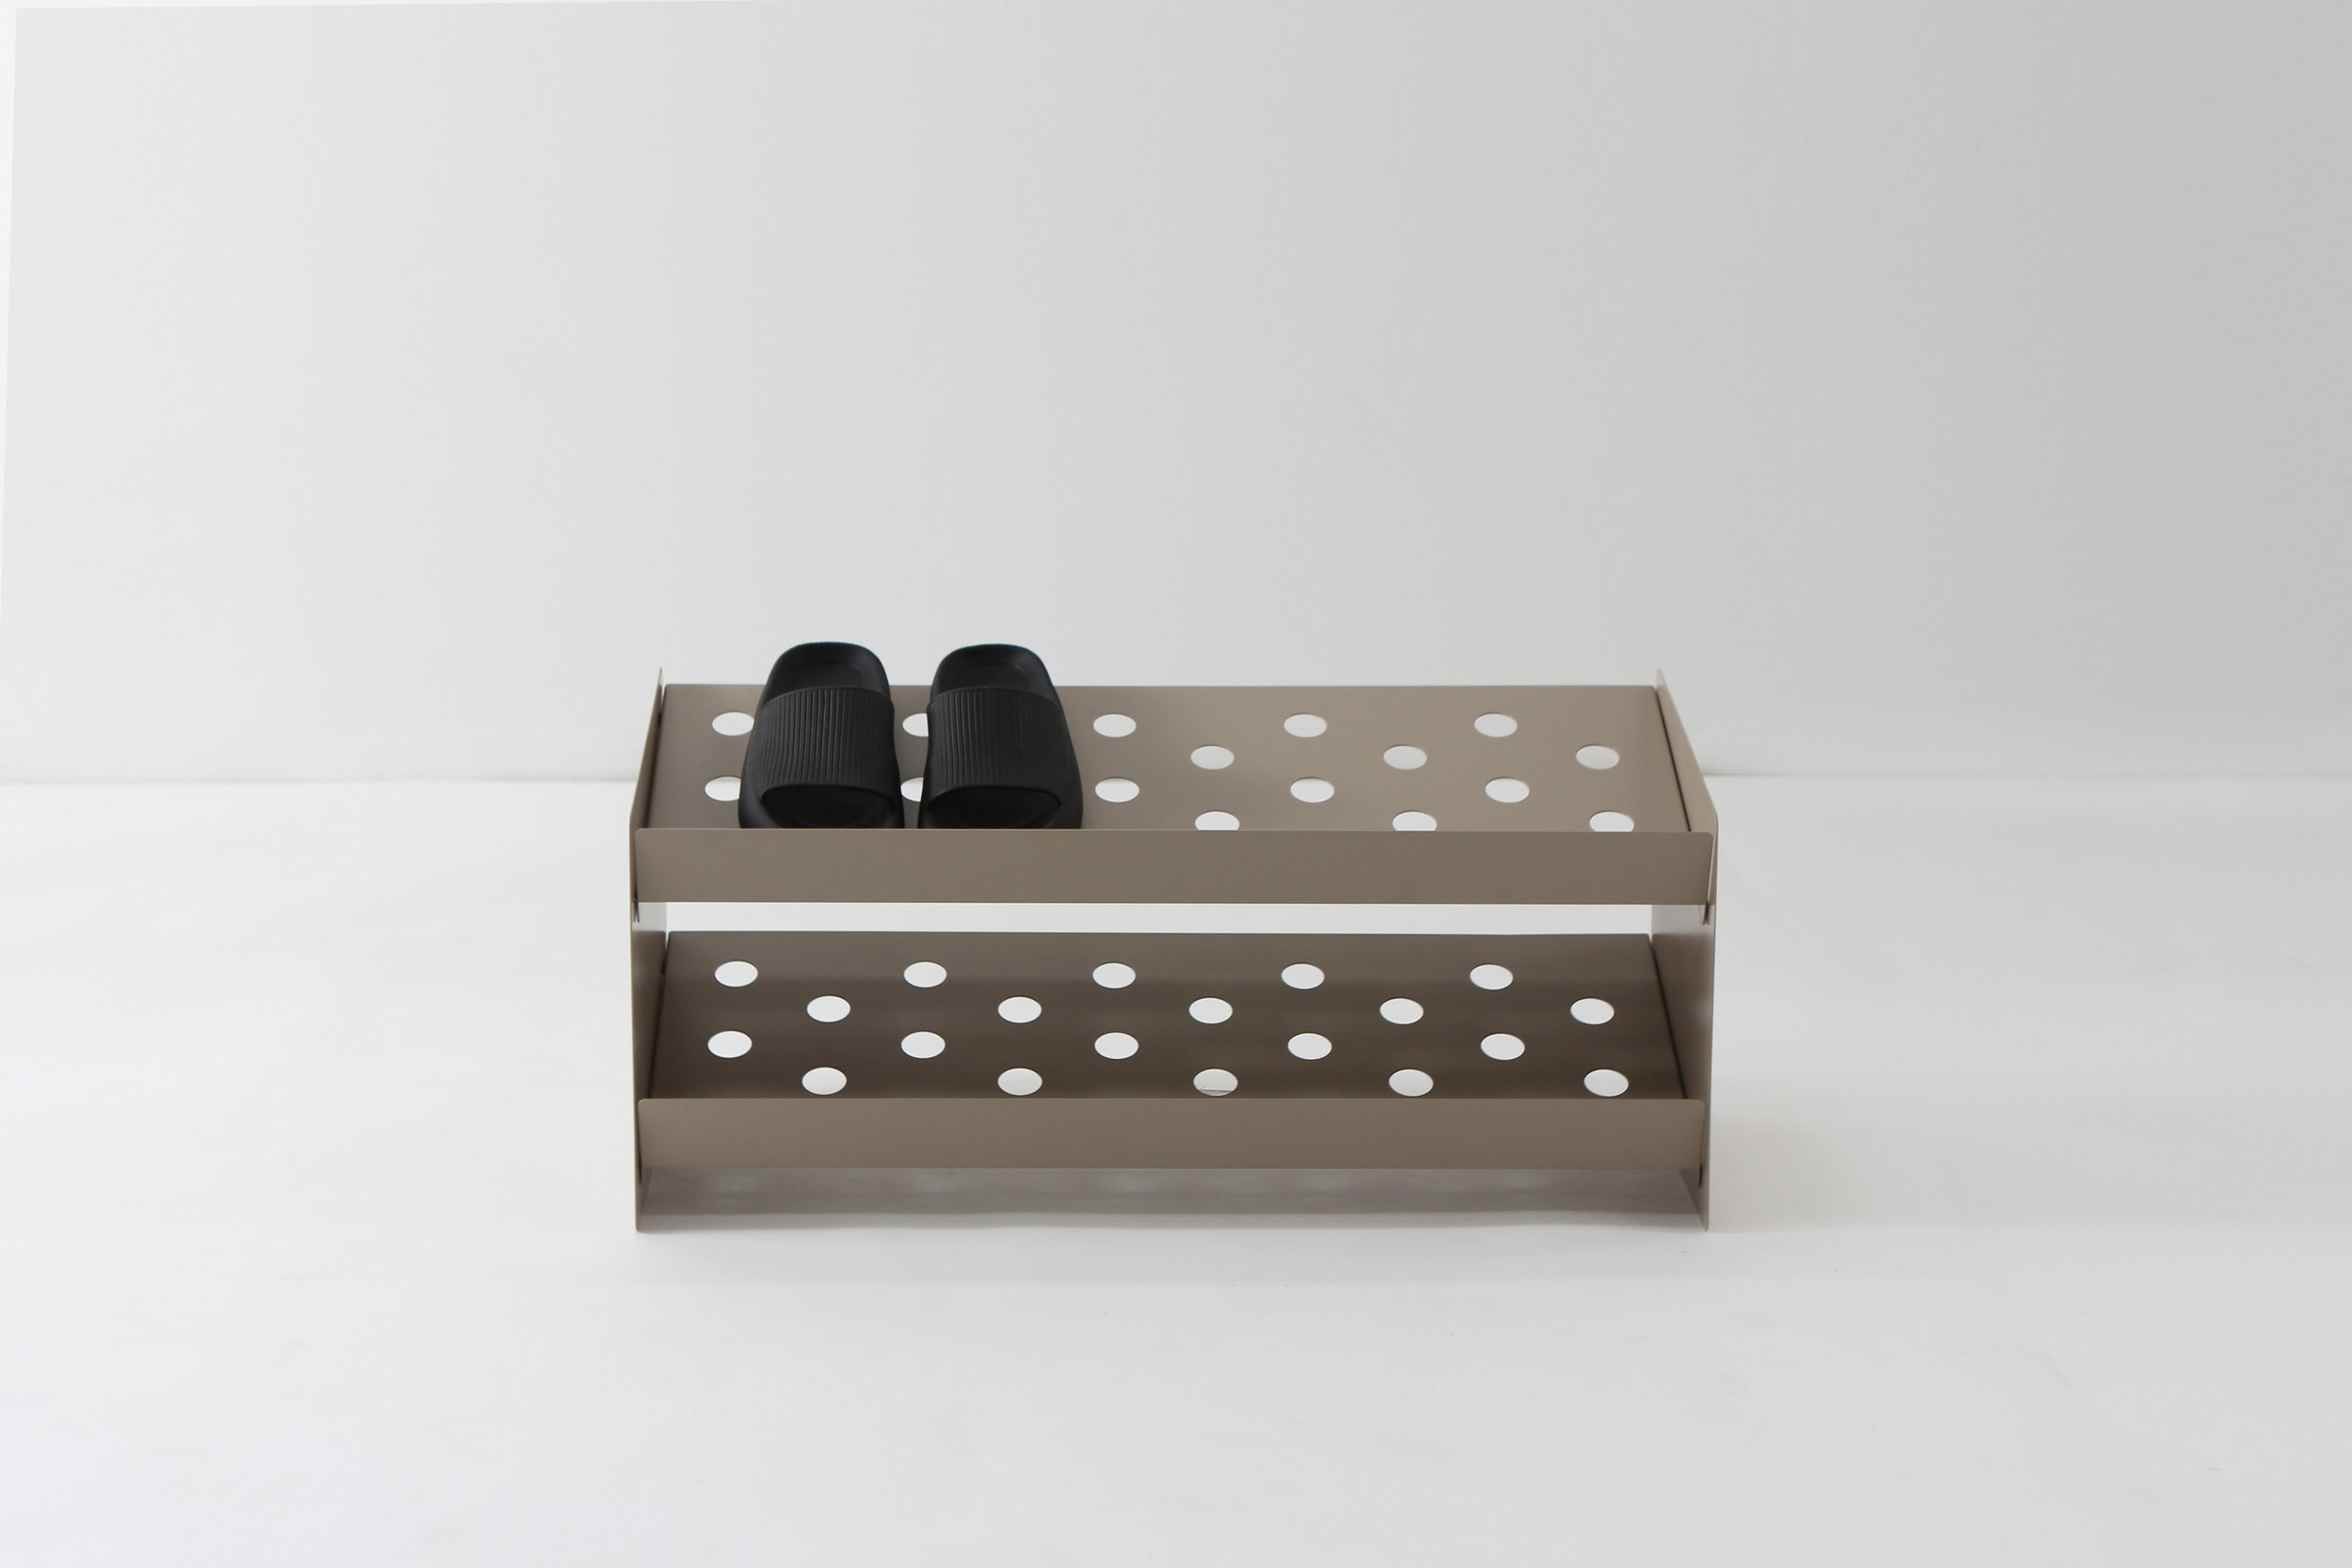 Custom Shoe Box - Corrugated Retail Box - Fantastapack